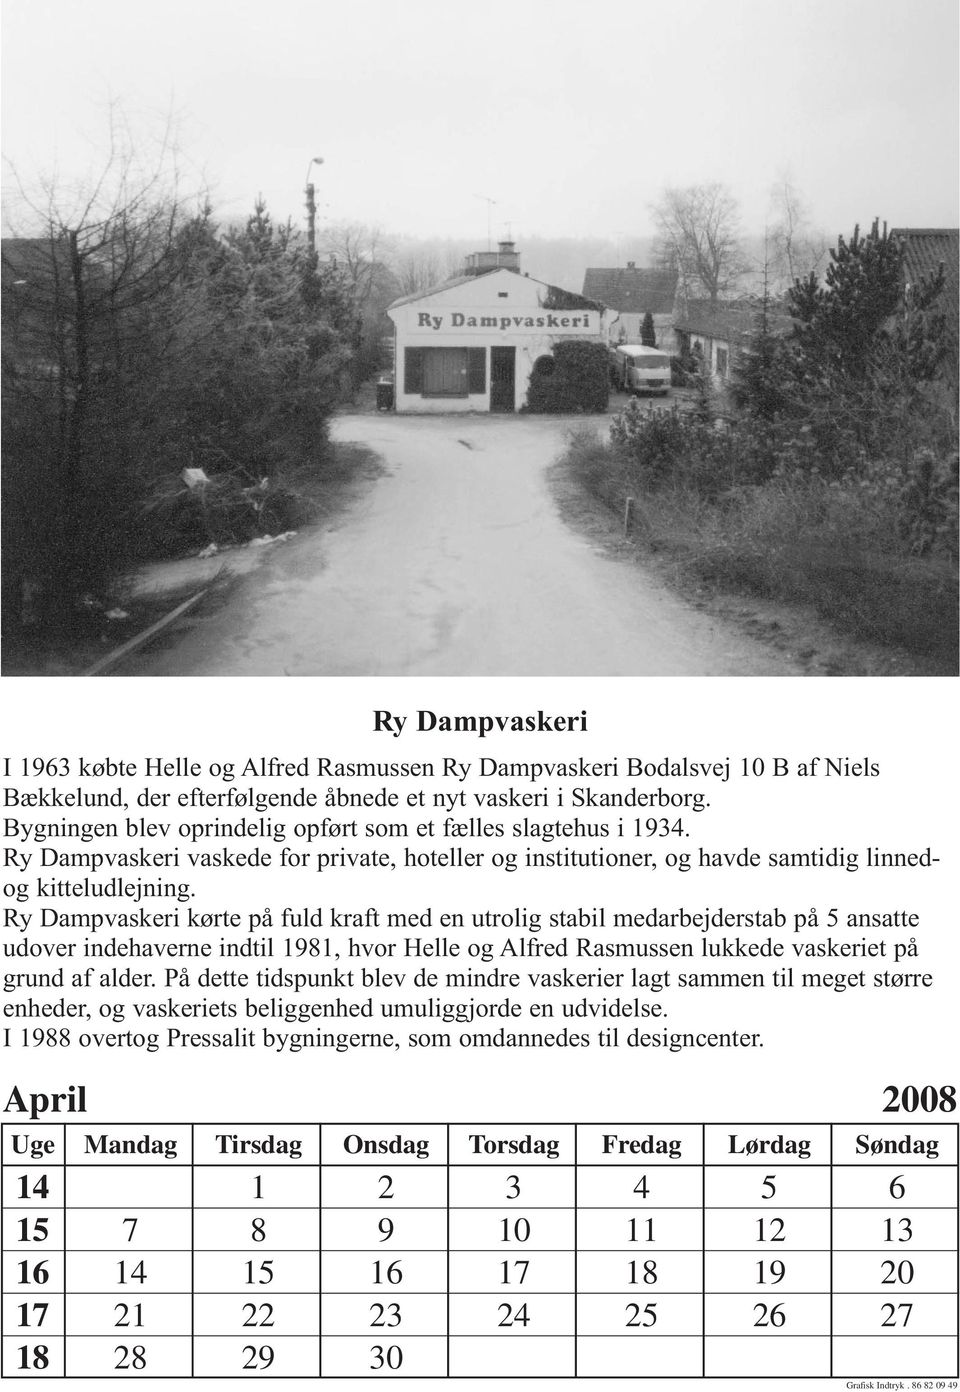 Ry Dampvaskeri kørte på fuld kraft med en utrolig stabil medarbejderstab på 5 ansatte udover indehaverne indtil 1981, hvor Helle og Alfred Rasmussen lukkede vaskeriet på grund af alder.